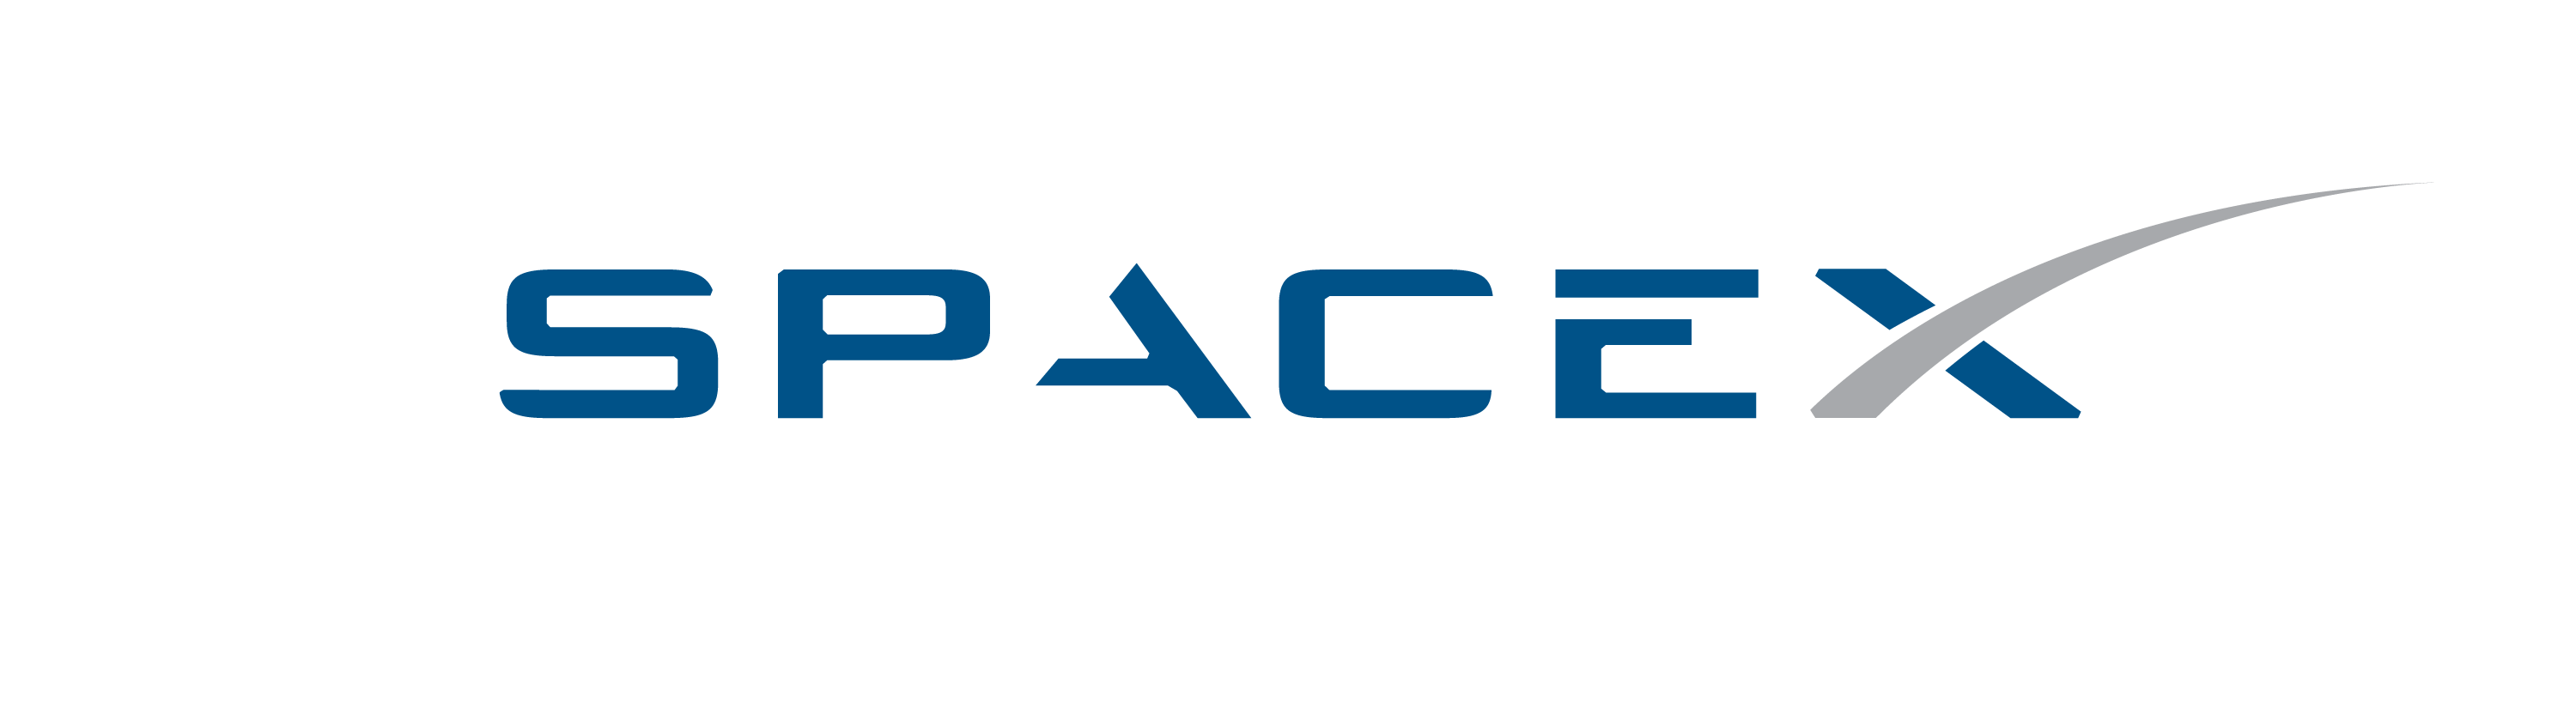 SpaceX Logo Wallpaper